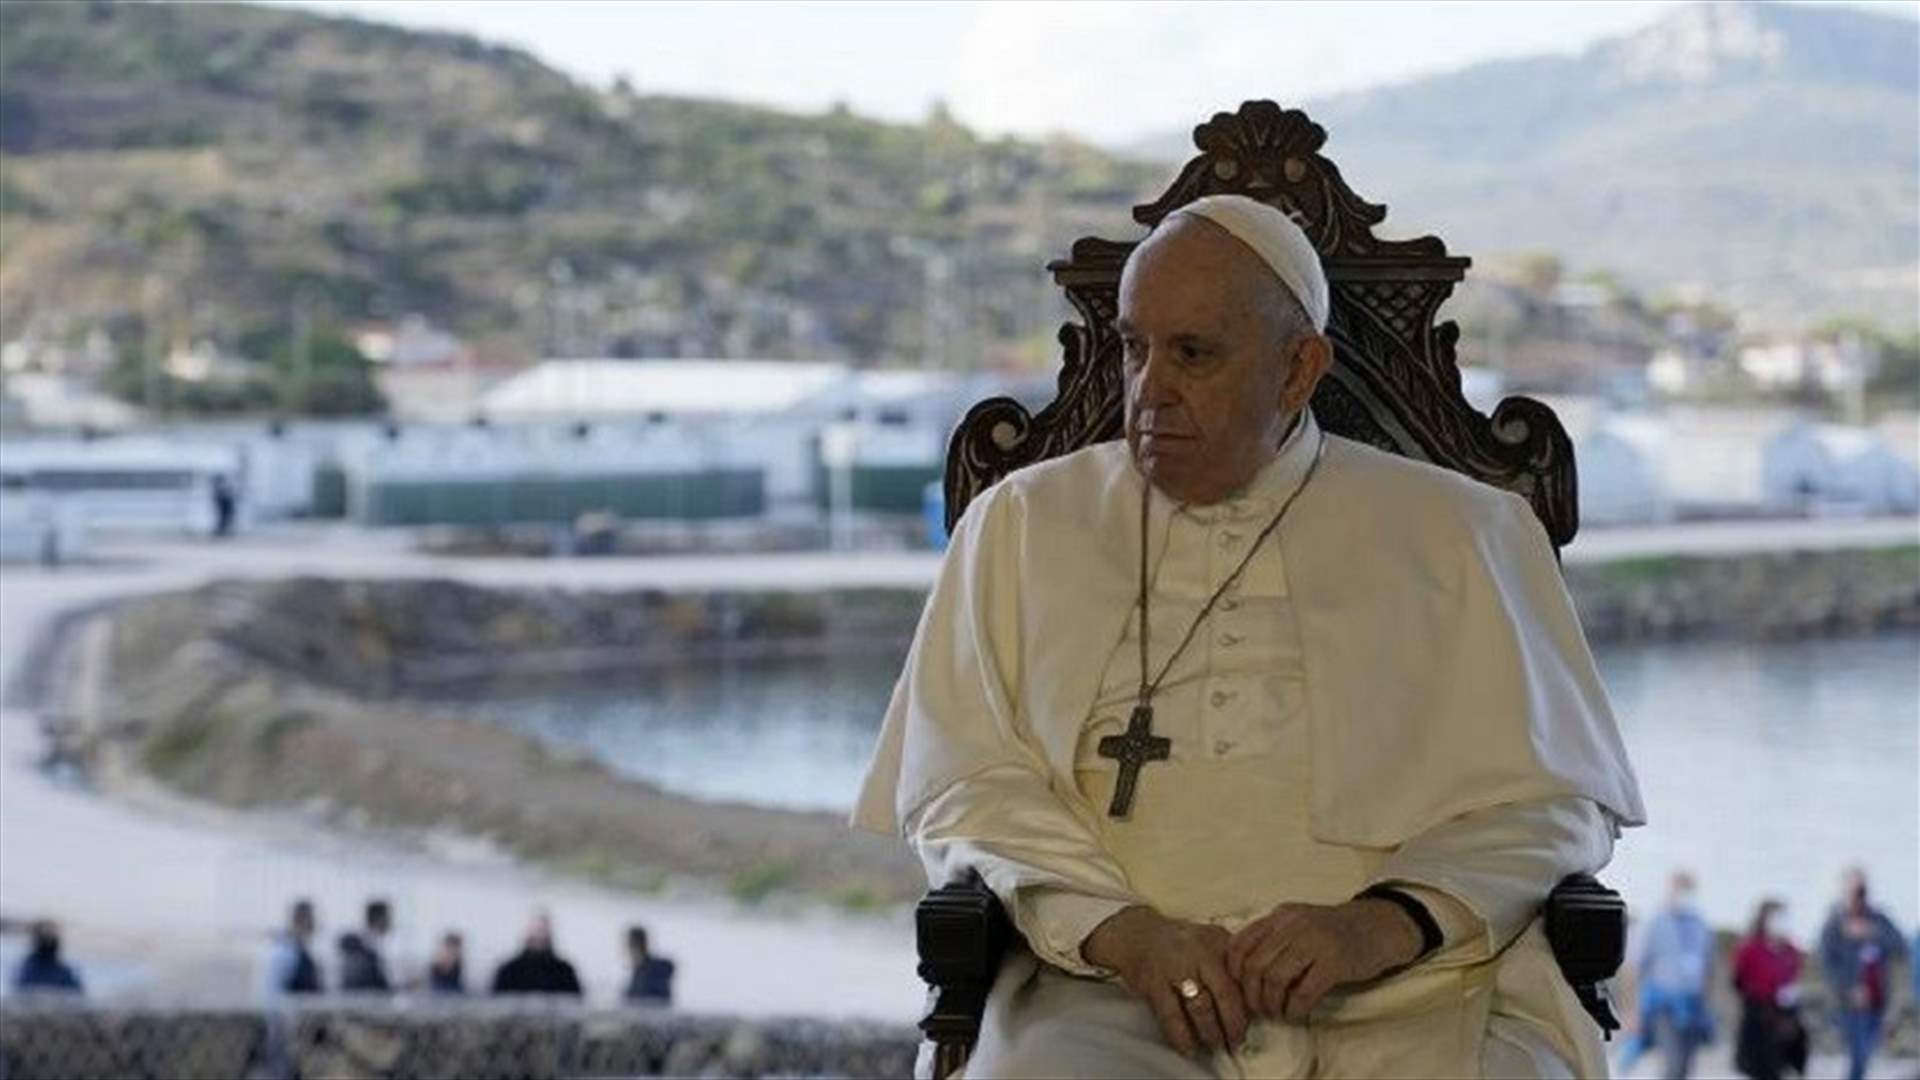 البابا فرنسيس يصل إلى مخيم اللاجئين في جزيرة ليسبوس اليونانية